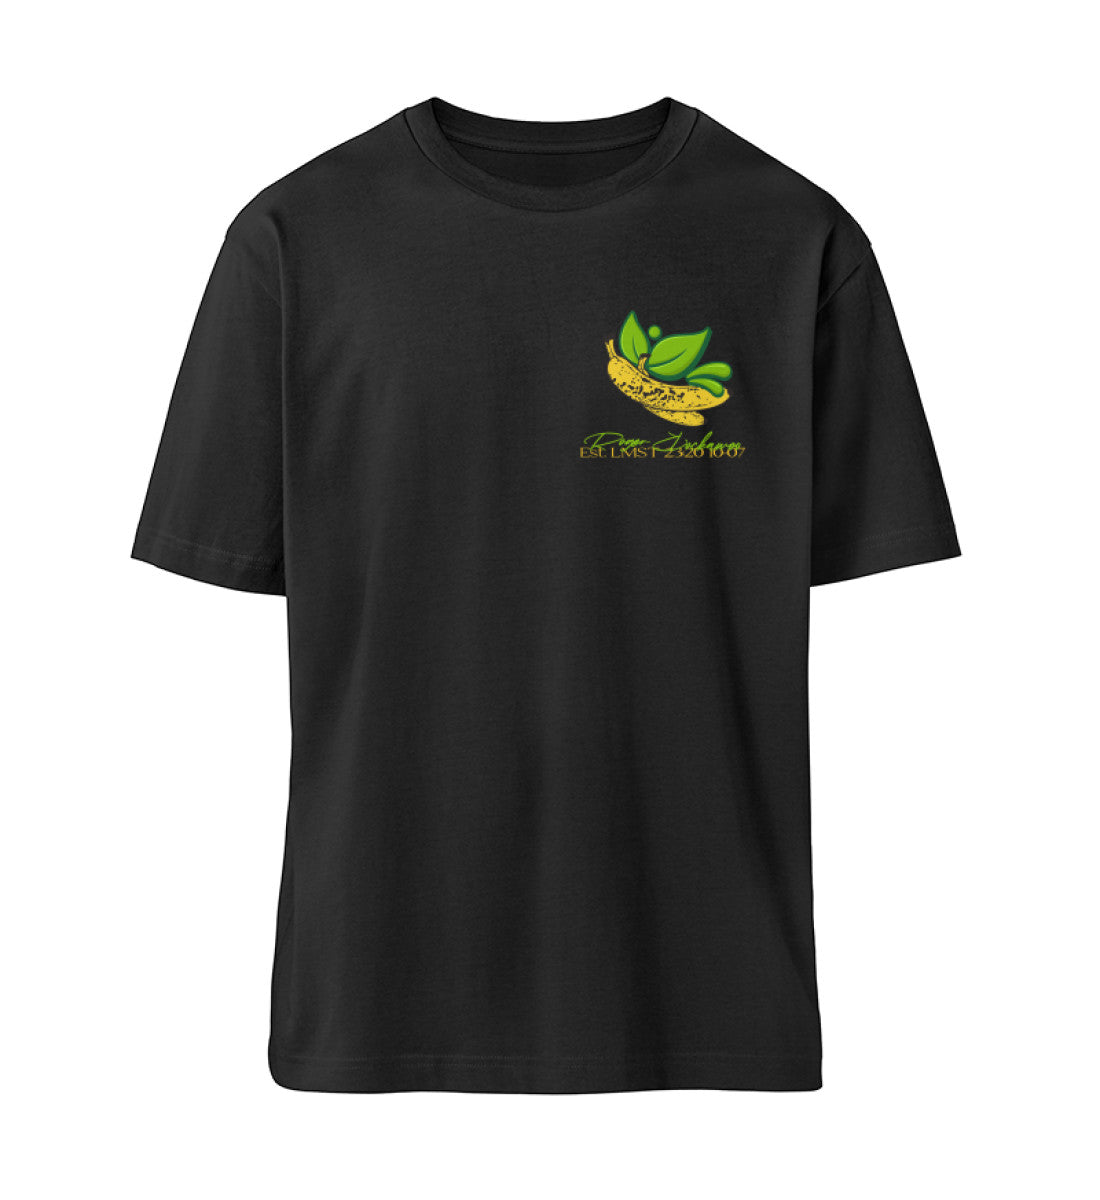 Schwarzes T-Shirt Unisex Relaxed Fit für Frauen und Männer bedruckt mit dem Design der Roger Rockawoo Kollektion vegan as f